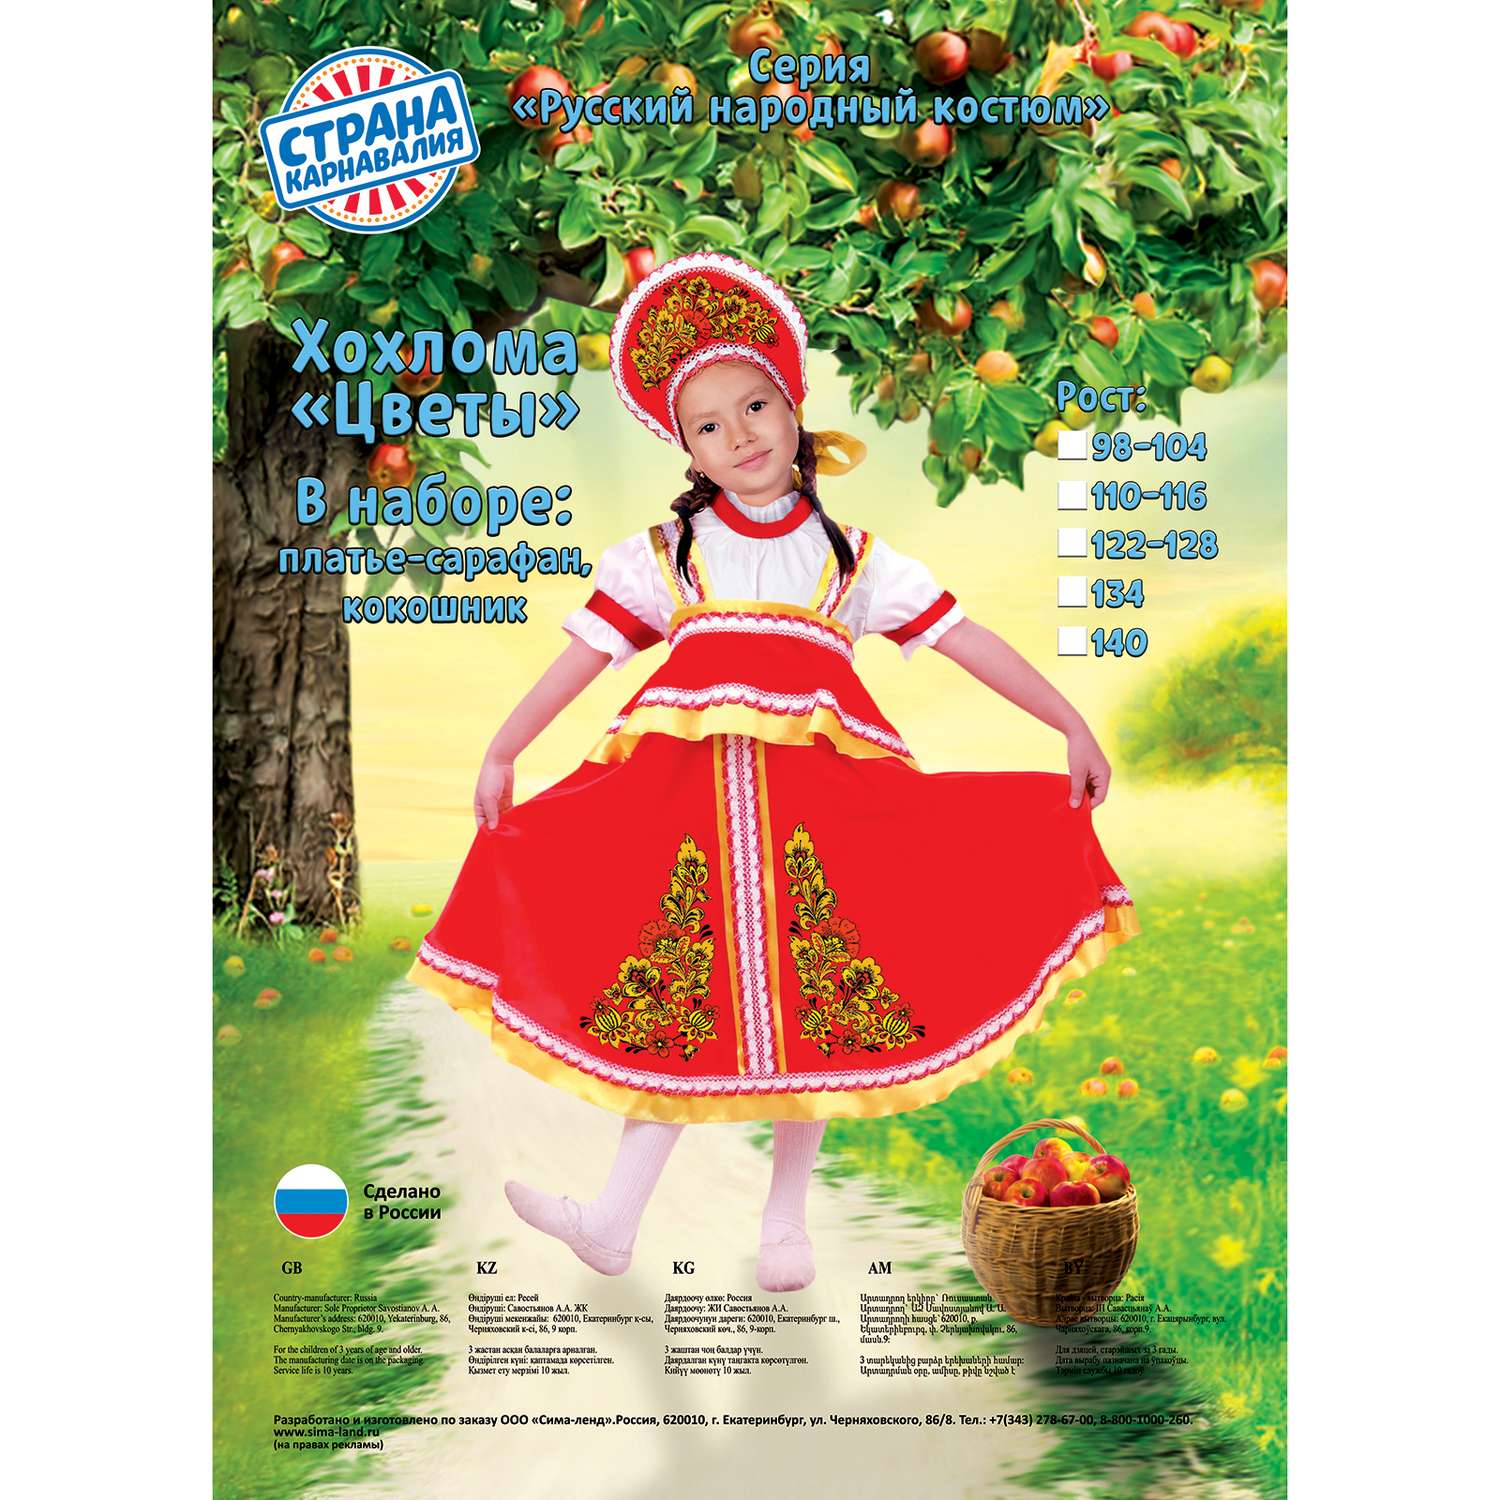 Карнавальный костюм Страна карнавалия русский Хохлома цветы размер 30 2818677 - фото 2